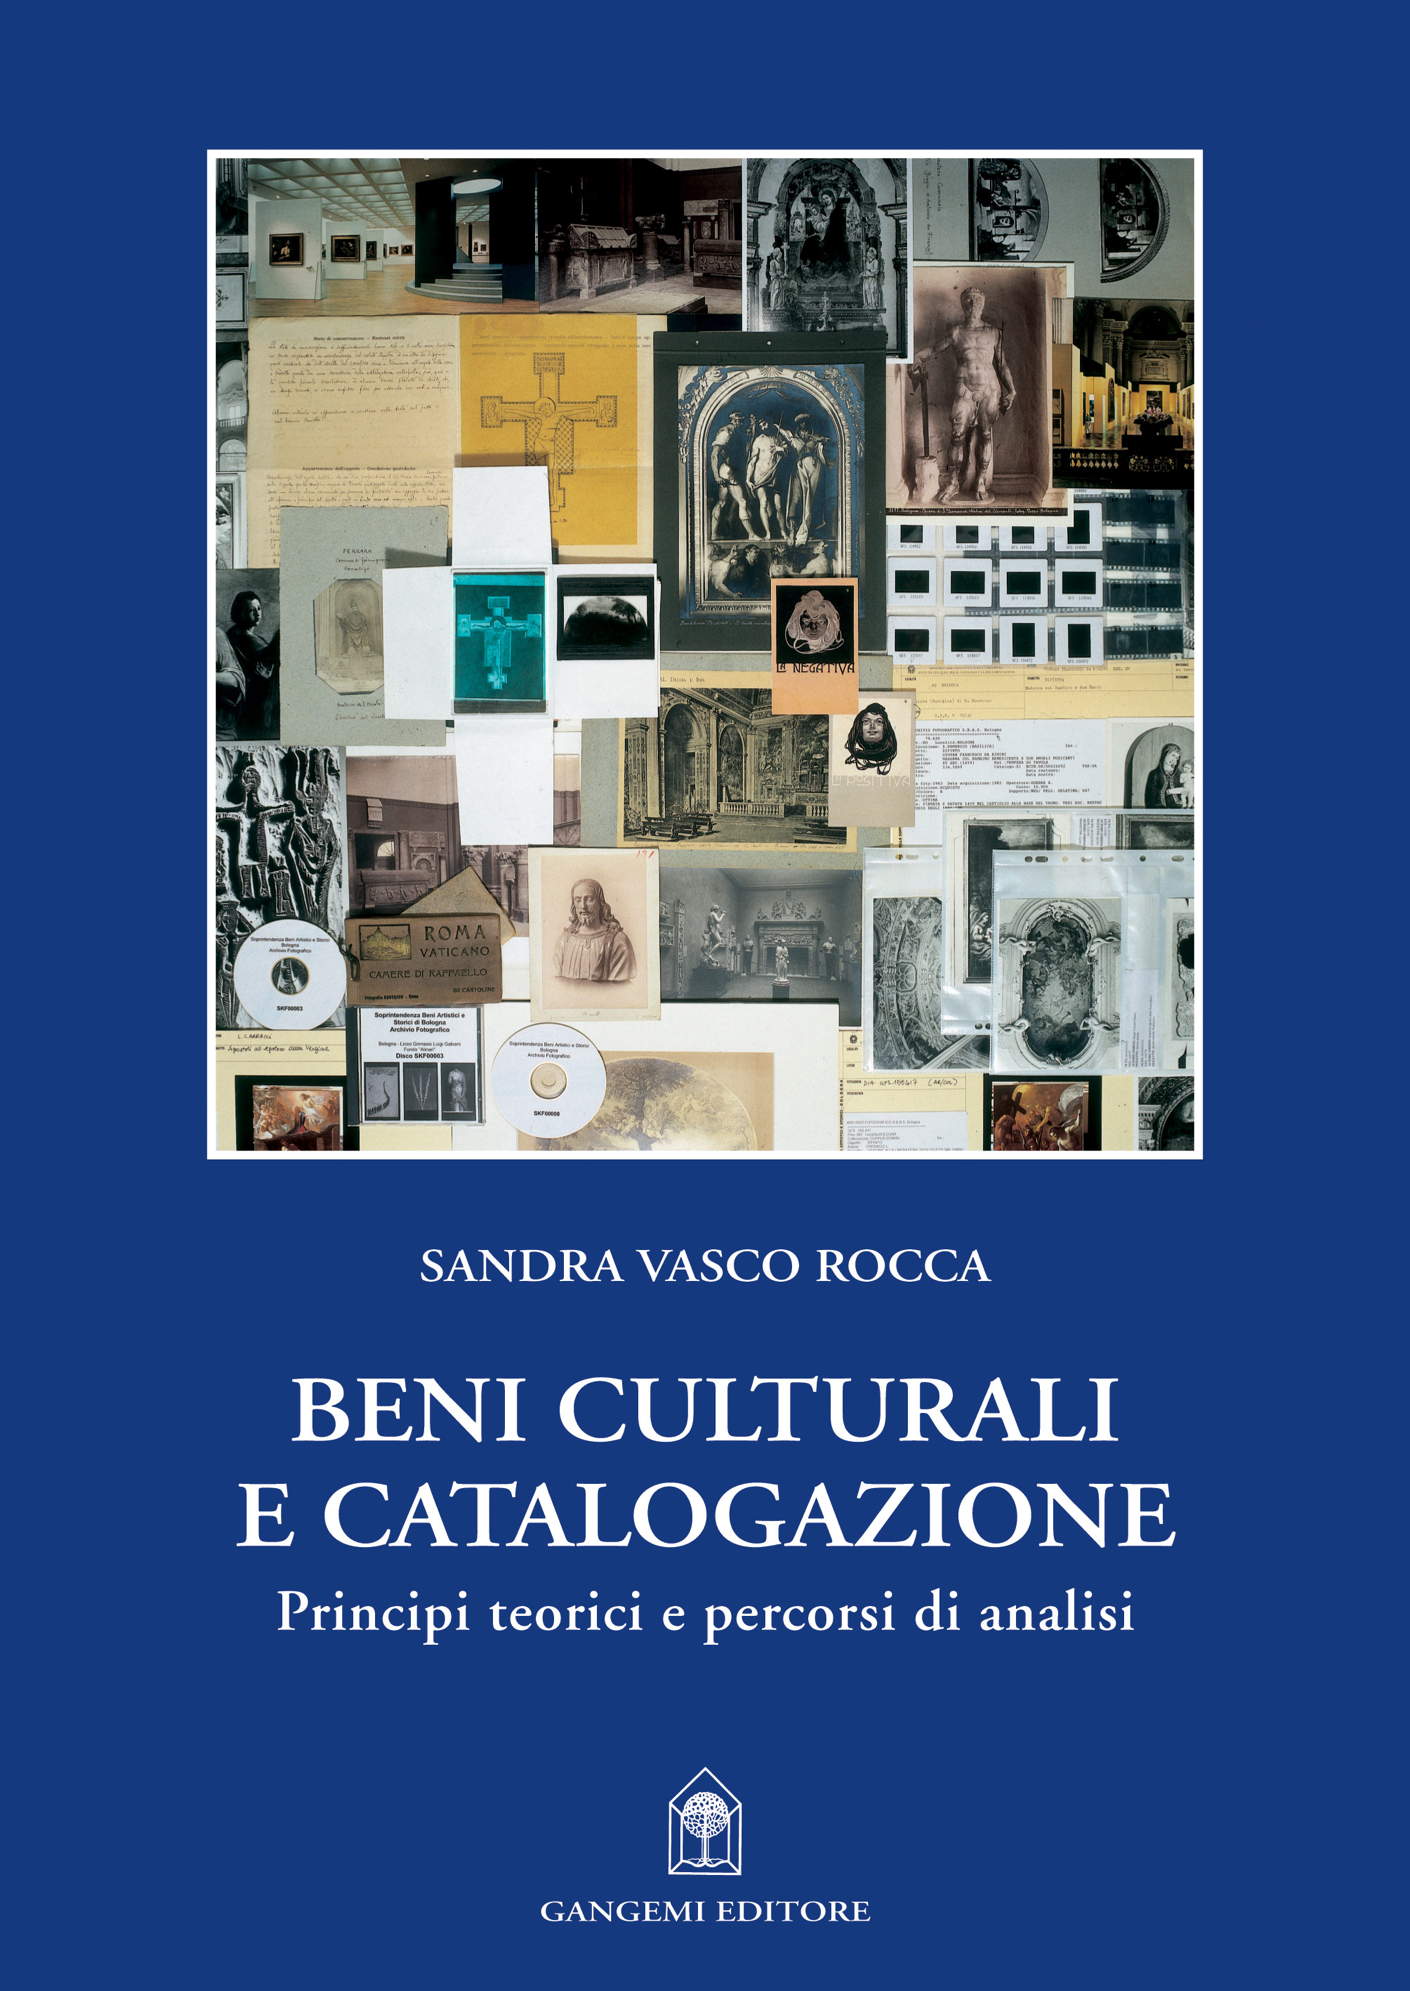 eBook, Beni culturali e catalogazione : principi  teorici e percorsi di analisi, Vasco Rocca, Sandra, Gangemi